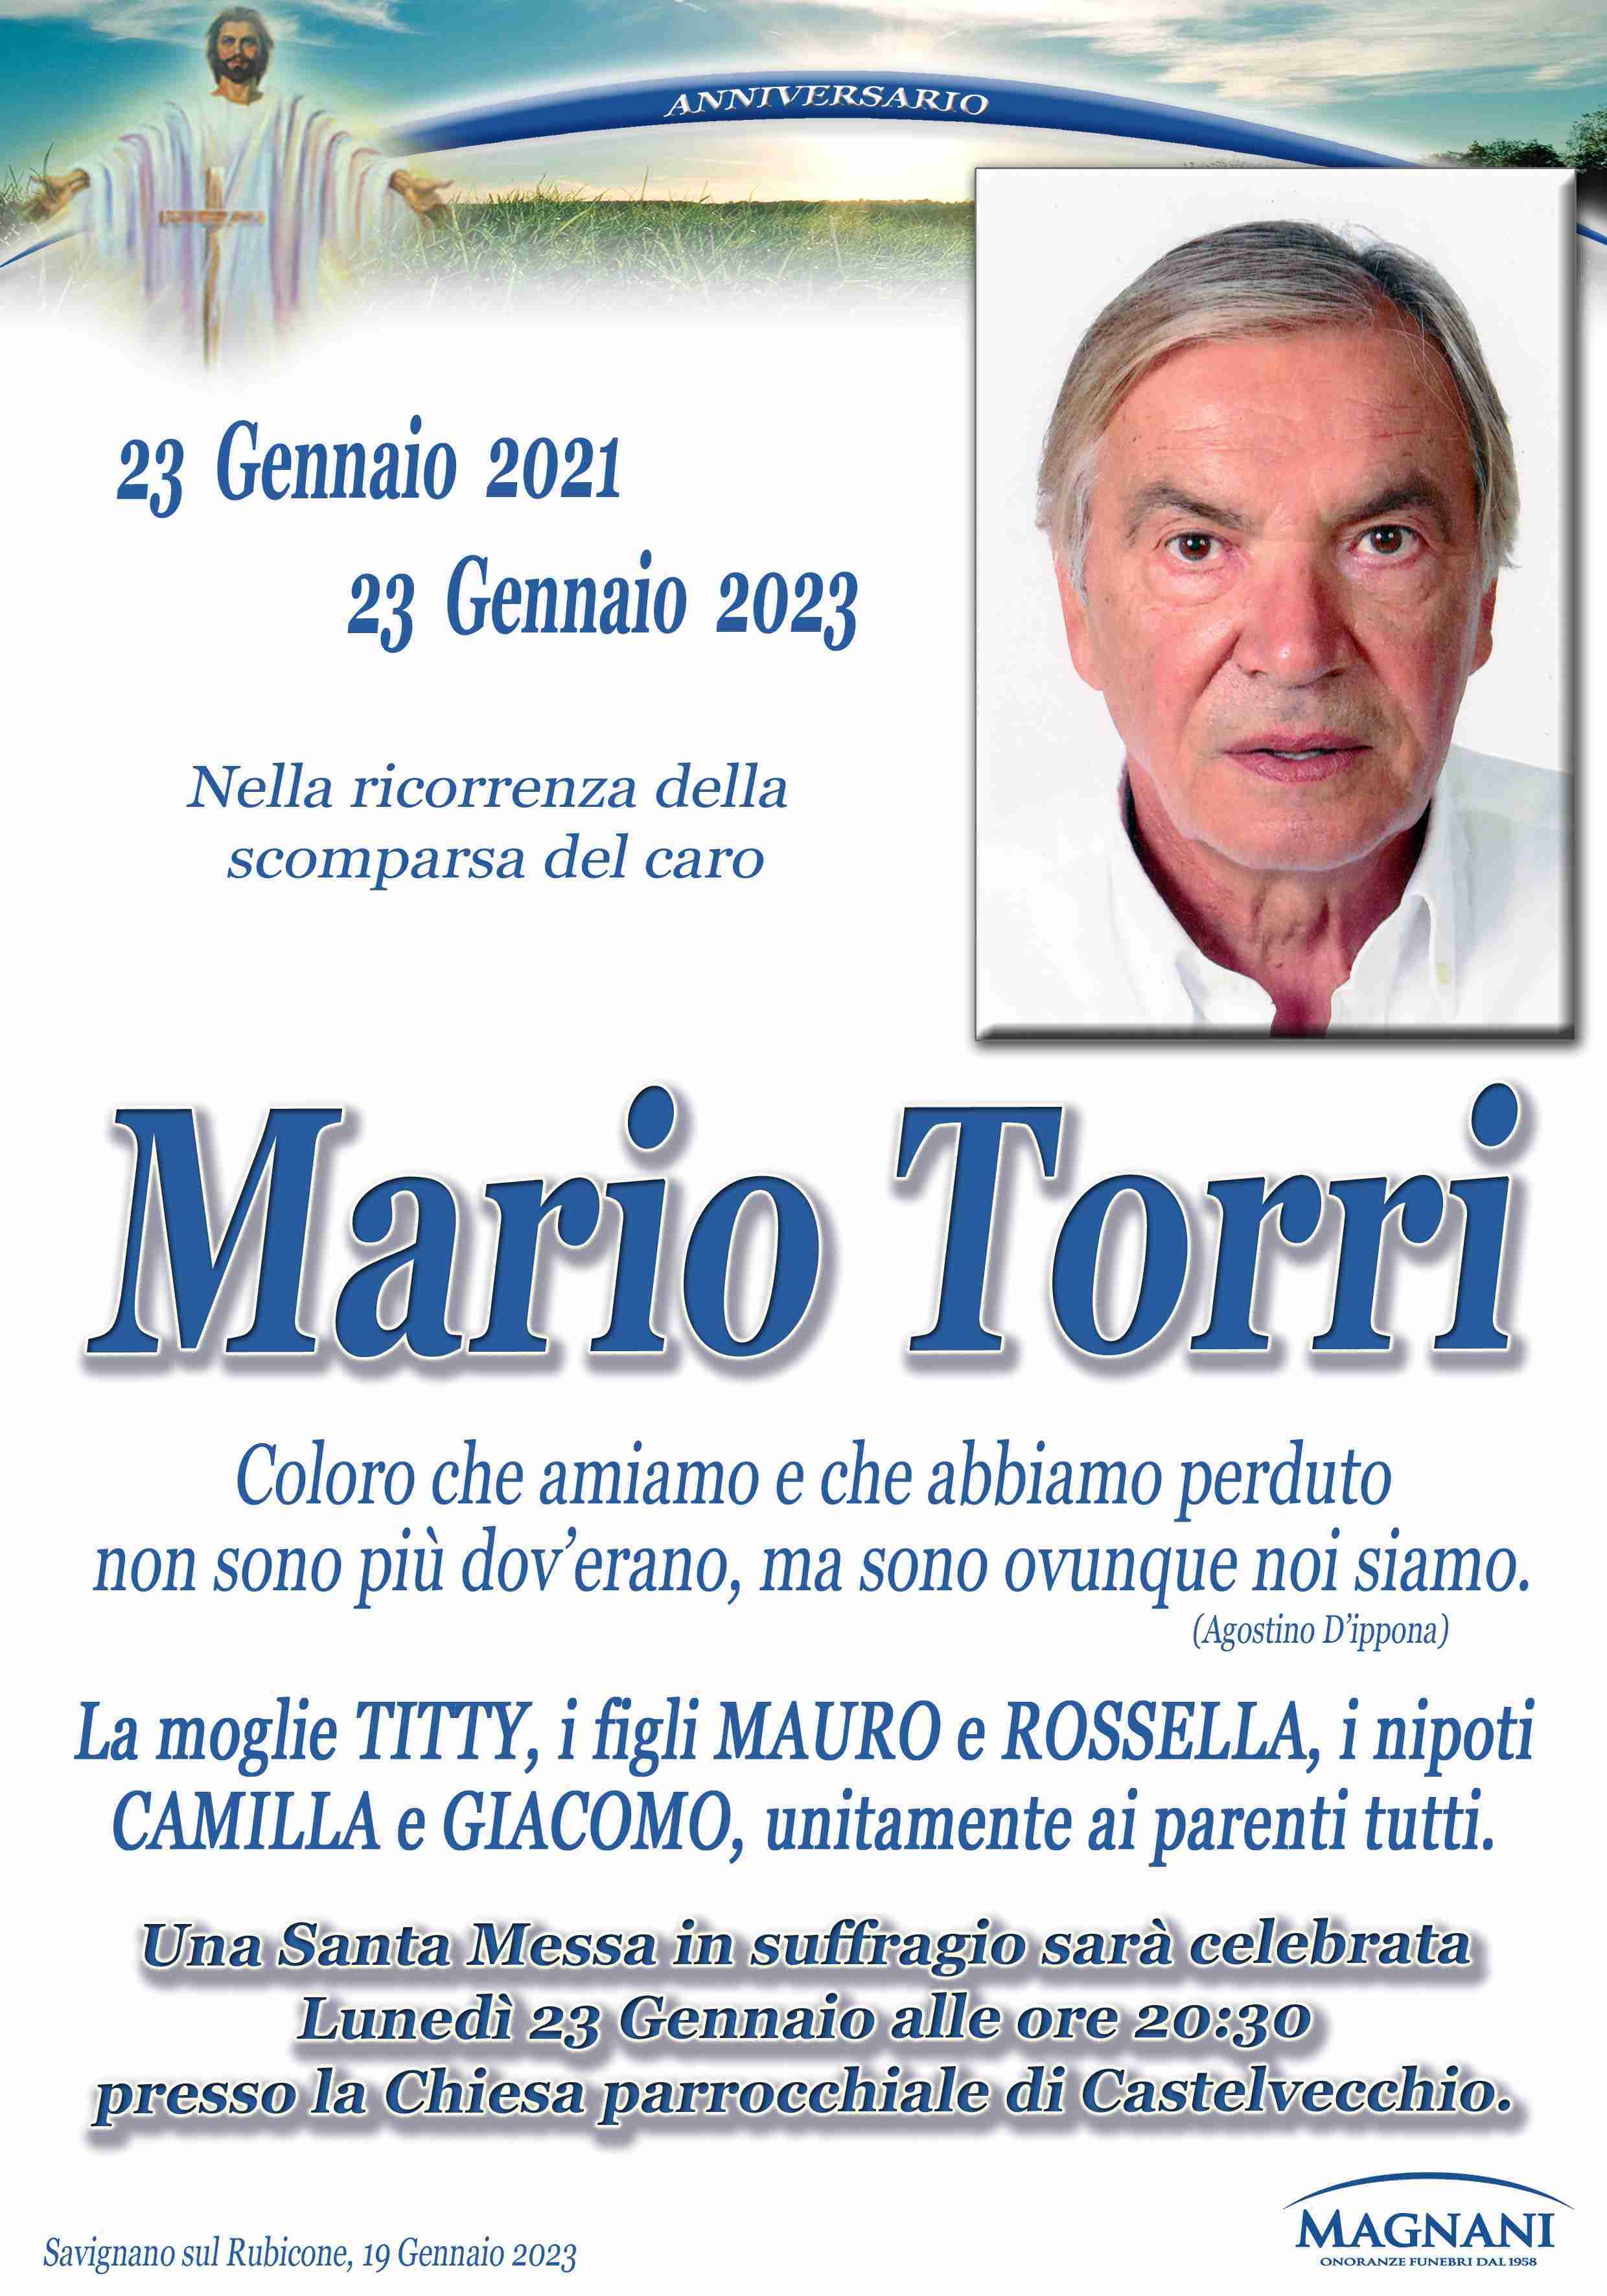 Mario Torri